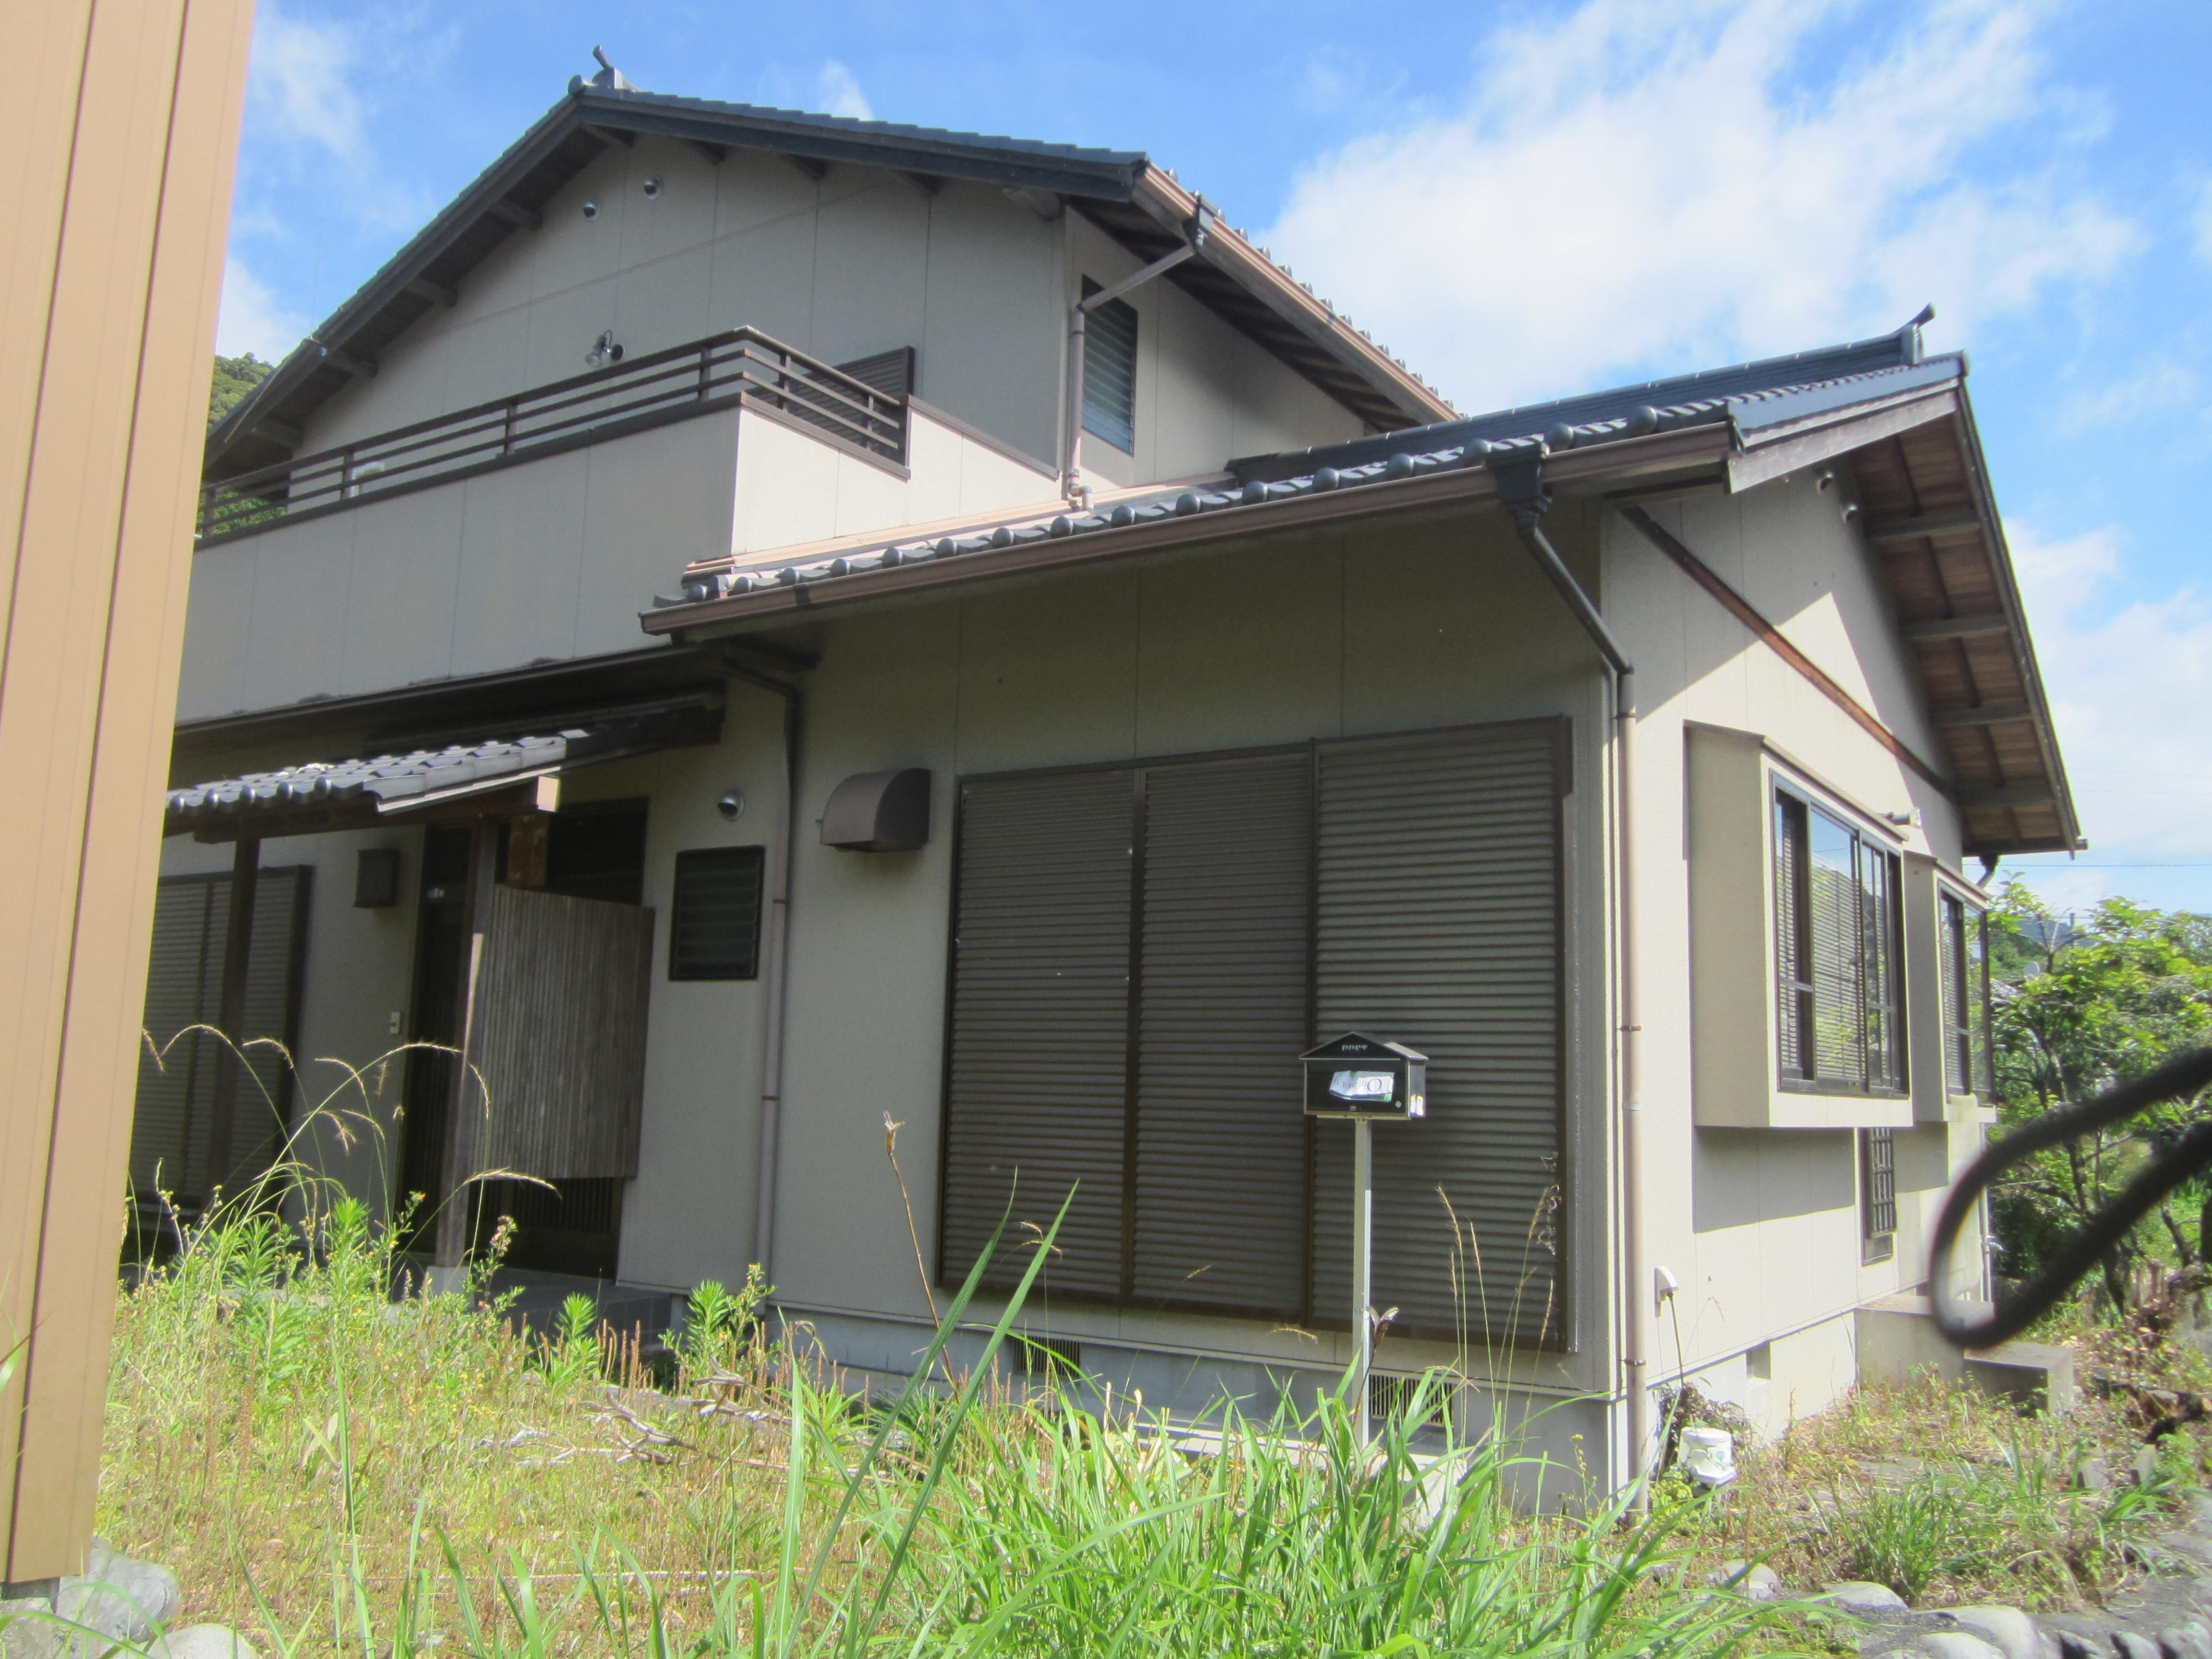 北川不動産の中古住宅・神尾496番地売却終了しました